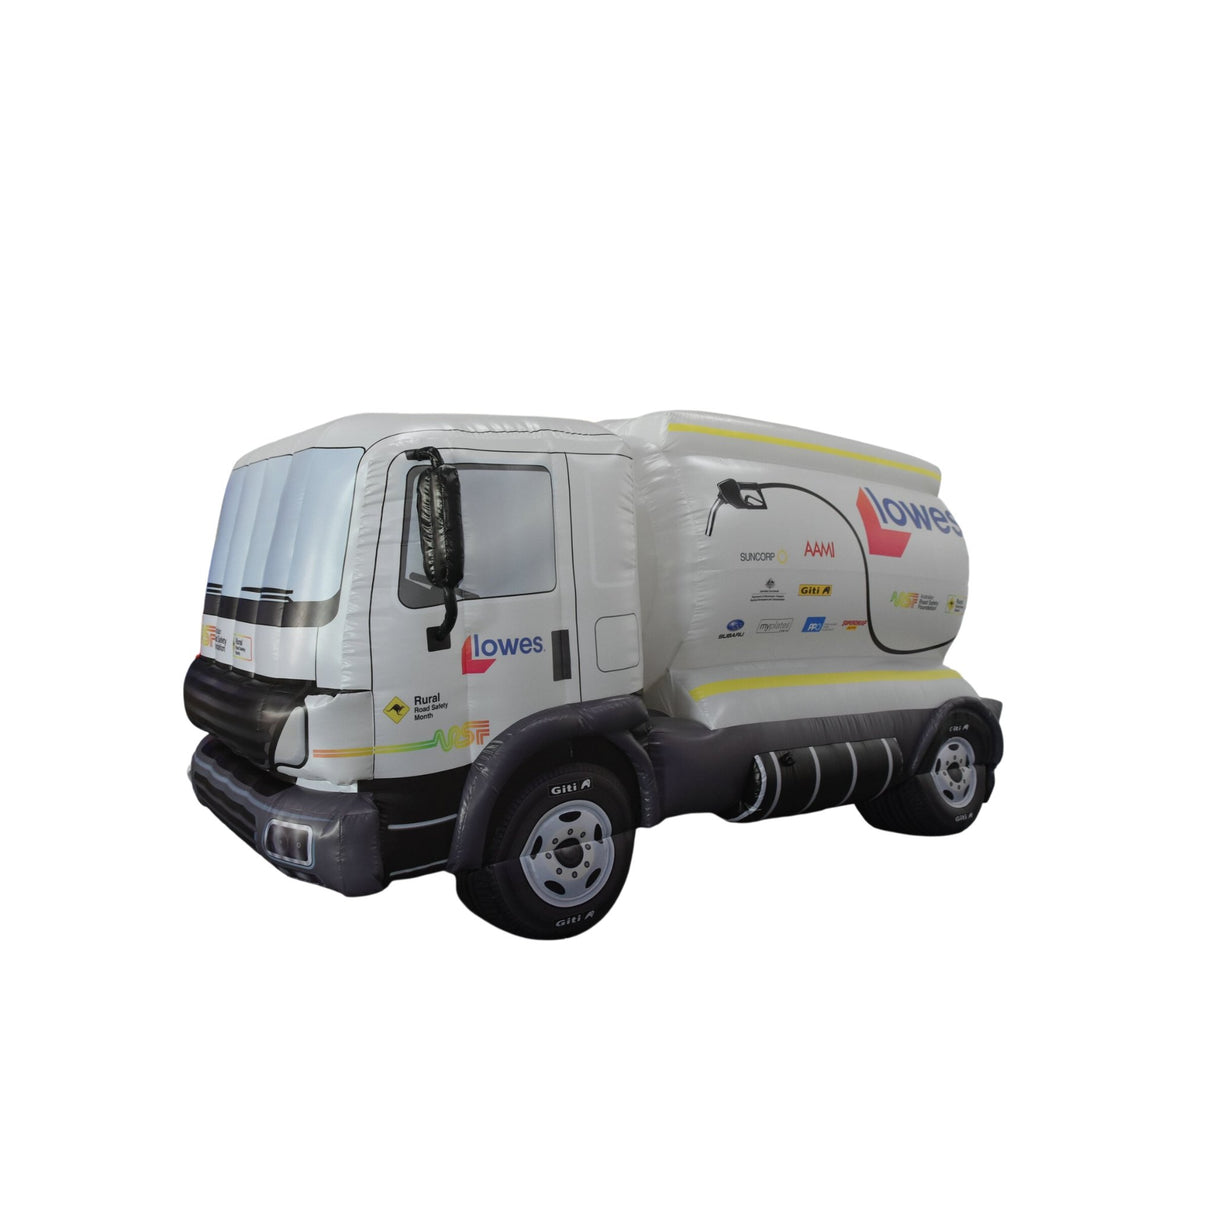 Inflatable Truck - Branding Evolution